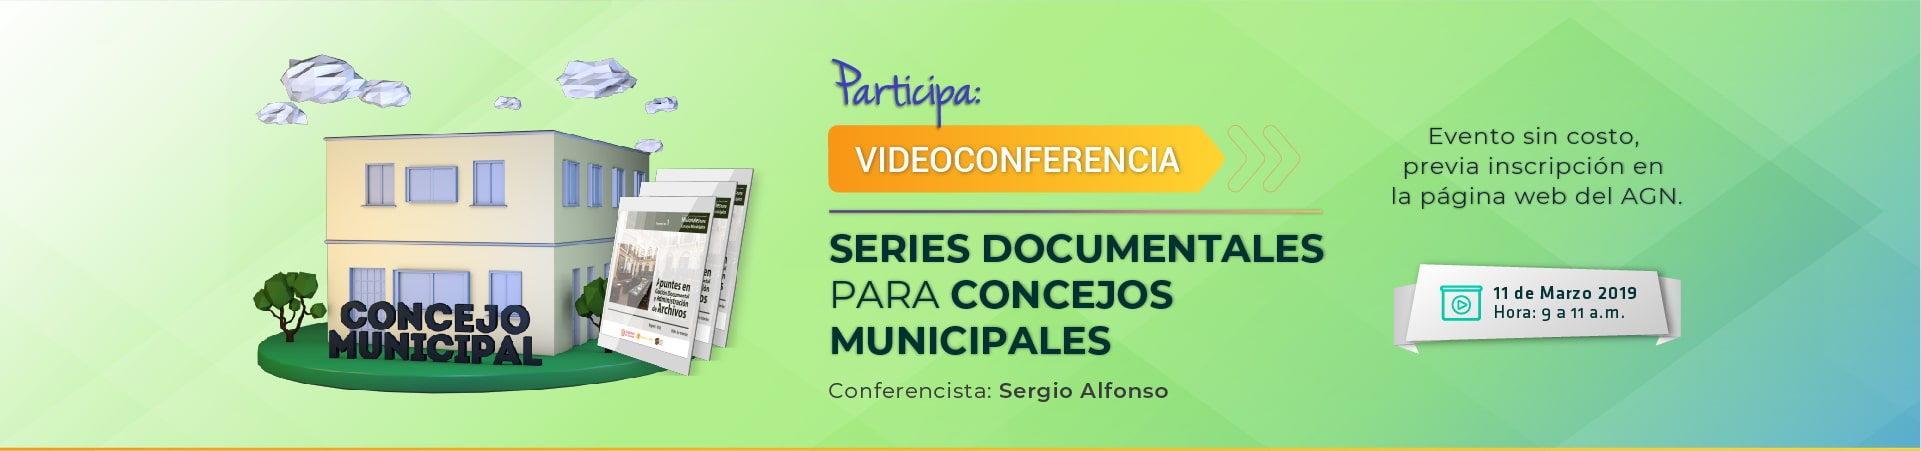 imagen videoconferencia series documentales para concejos municipales